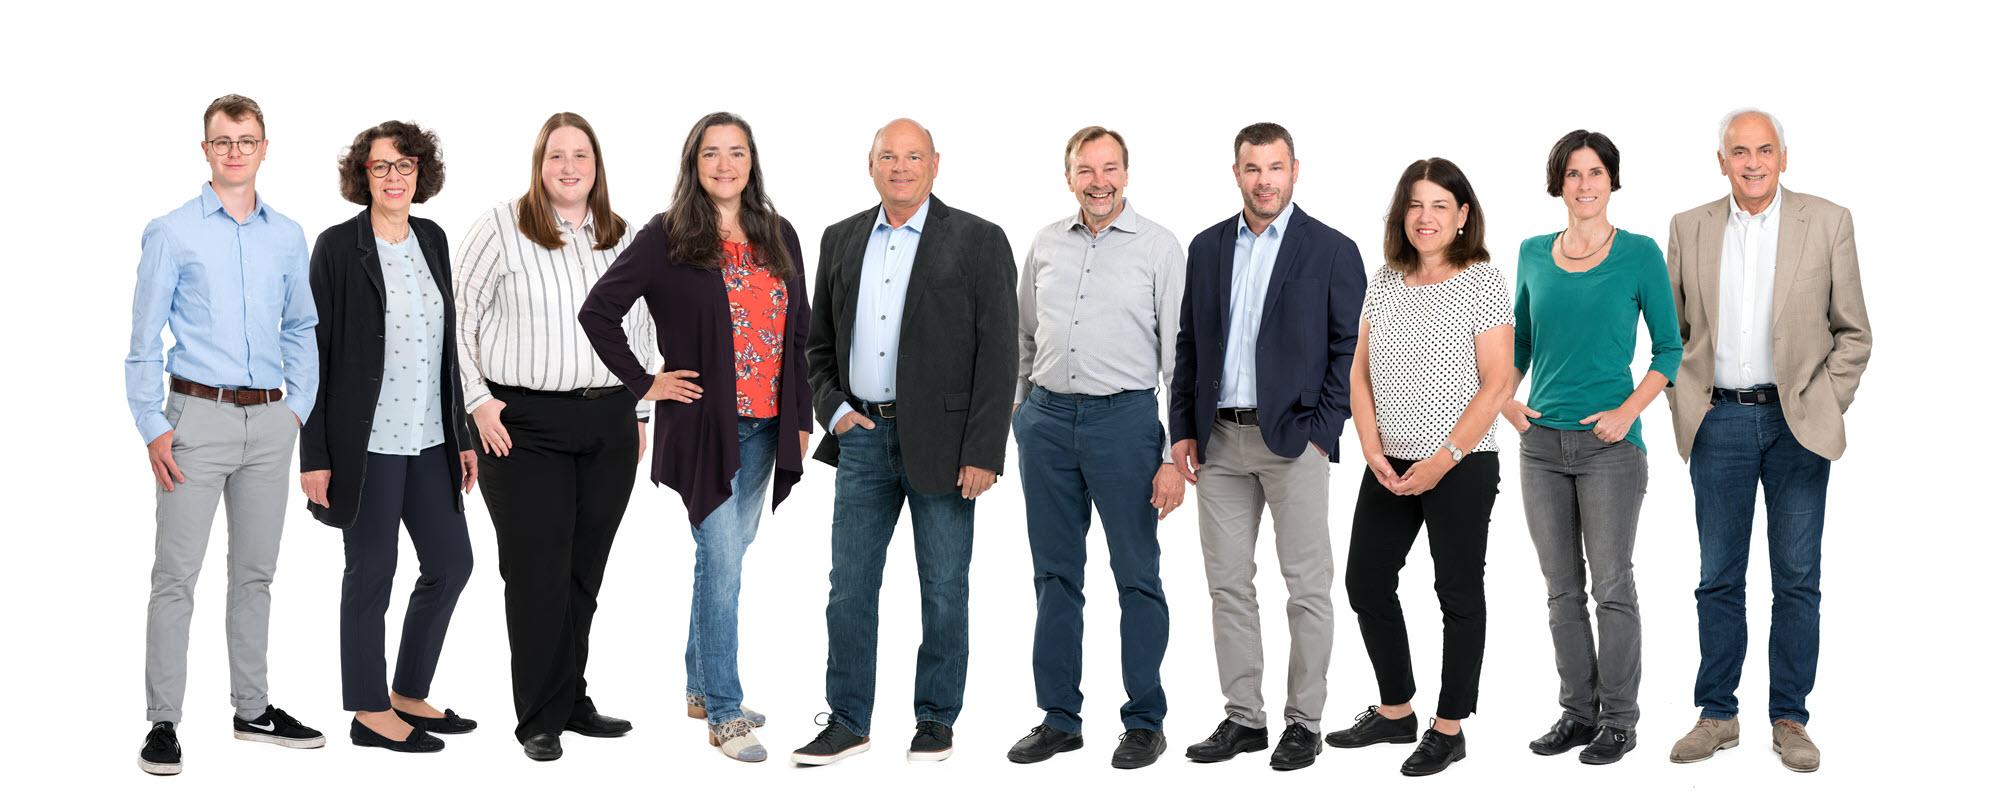 GRW-Brugg-Gruppenfoto-Kandidaten